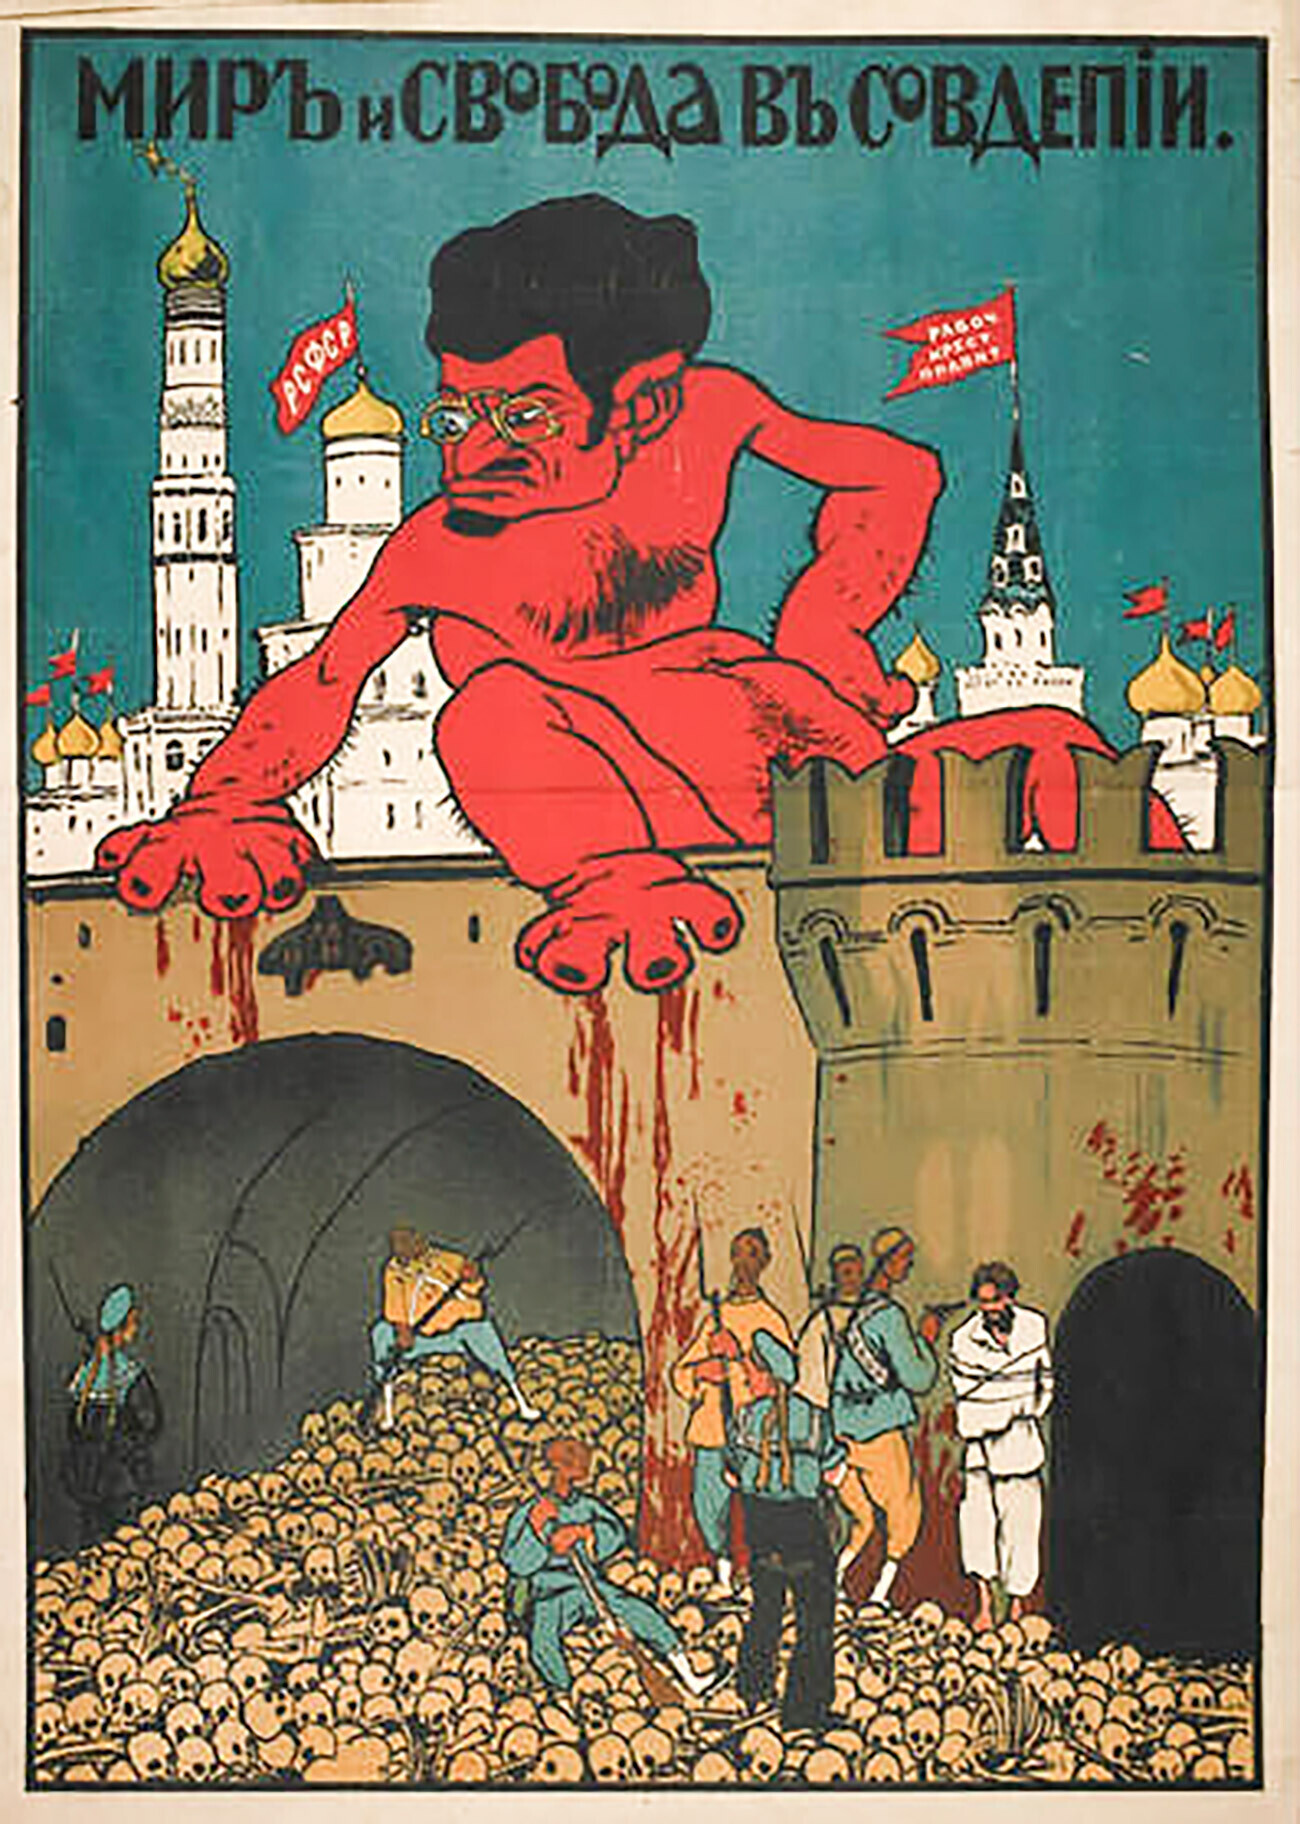 Karikatur auf Trotzki, die ihn als grausamen Mörder darstellt.